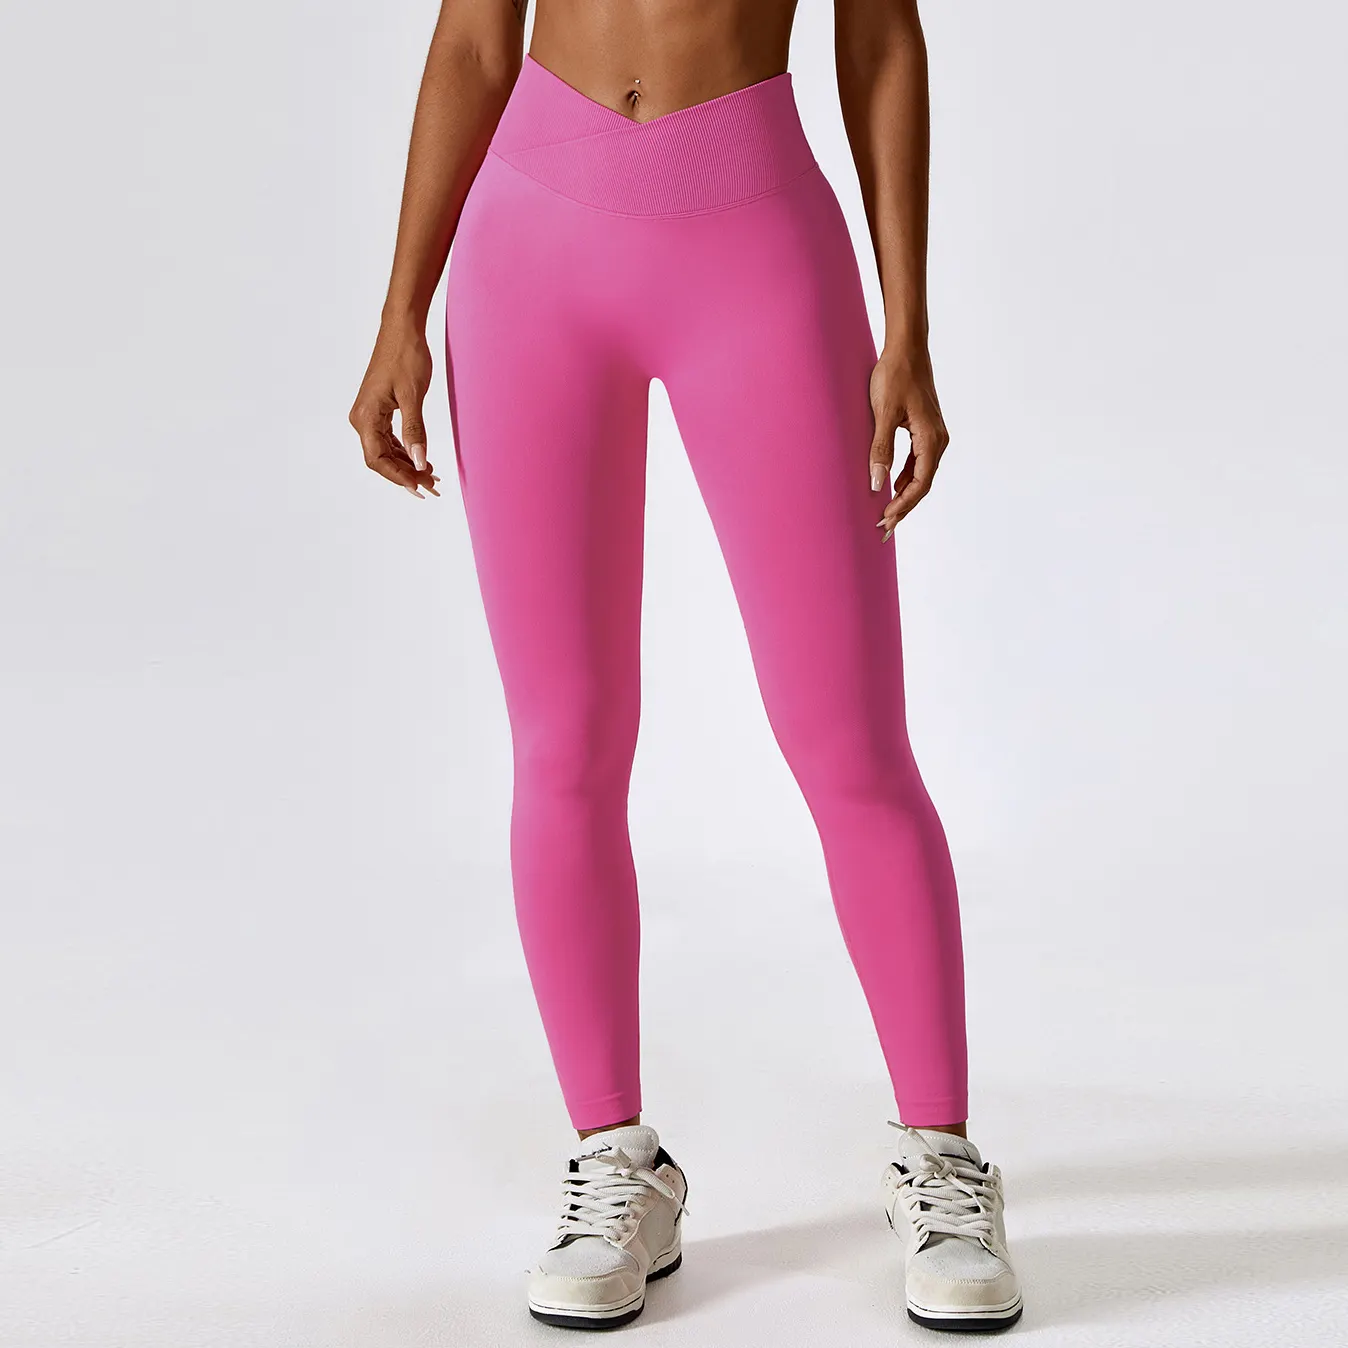 Venta al por mayor de las mujeres de alta calidad de realce de glúteos de compresión corte en V cintura sin costuras correr deportes Yoga Leggings medias